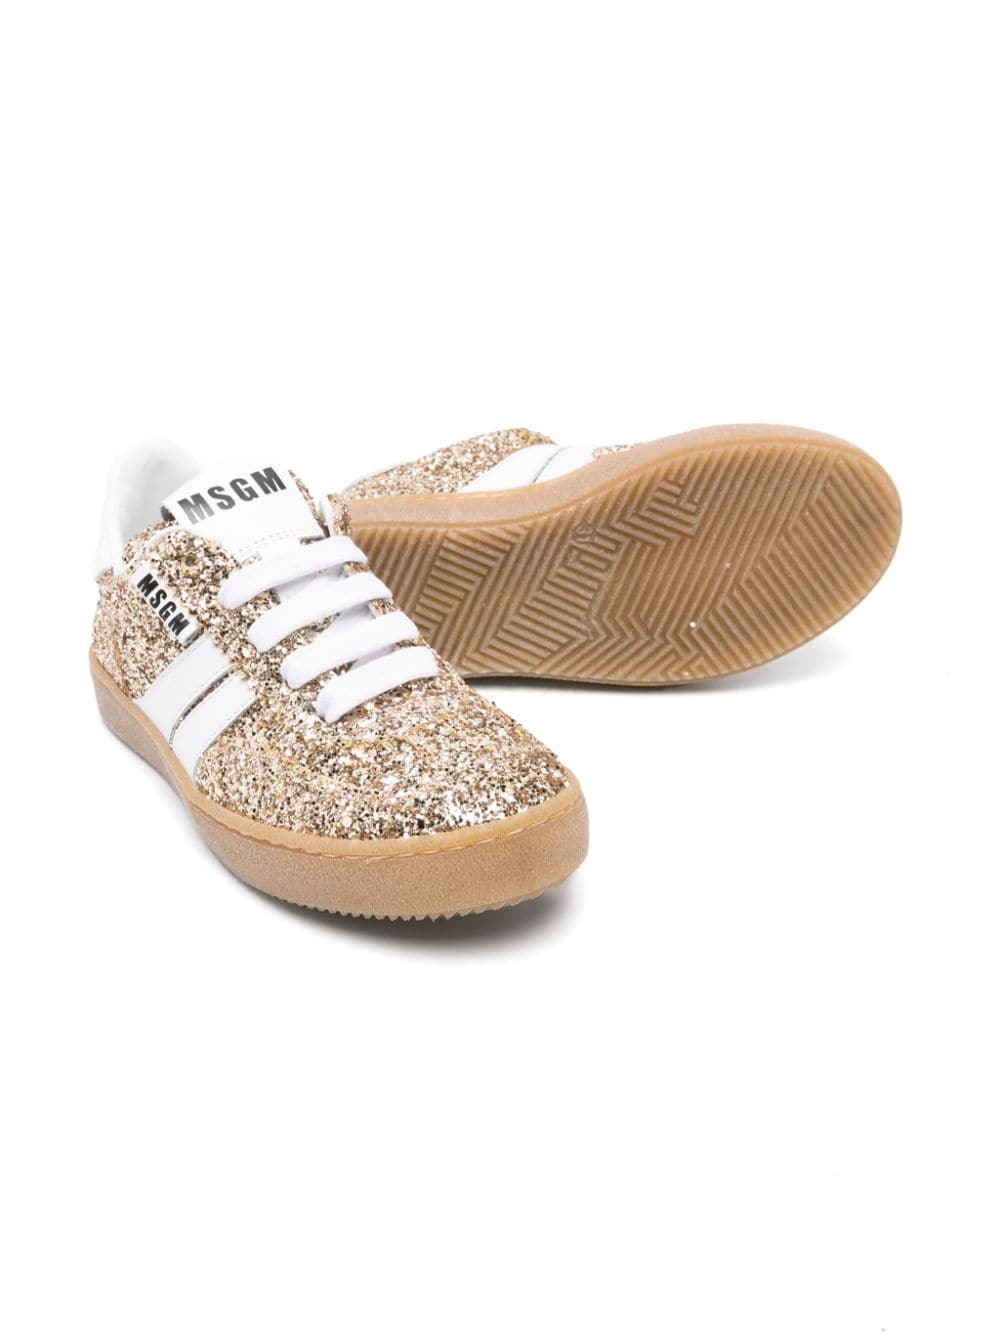 Sneakers Retro con glitter<BR/> - Rubino Kids